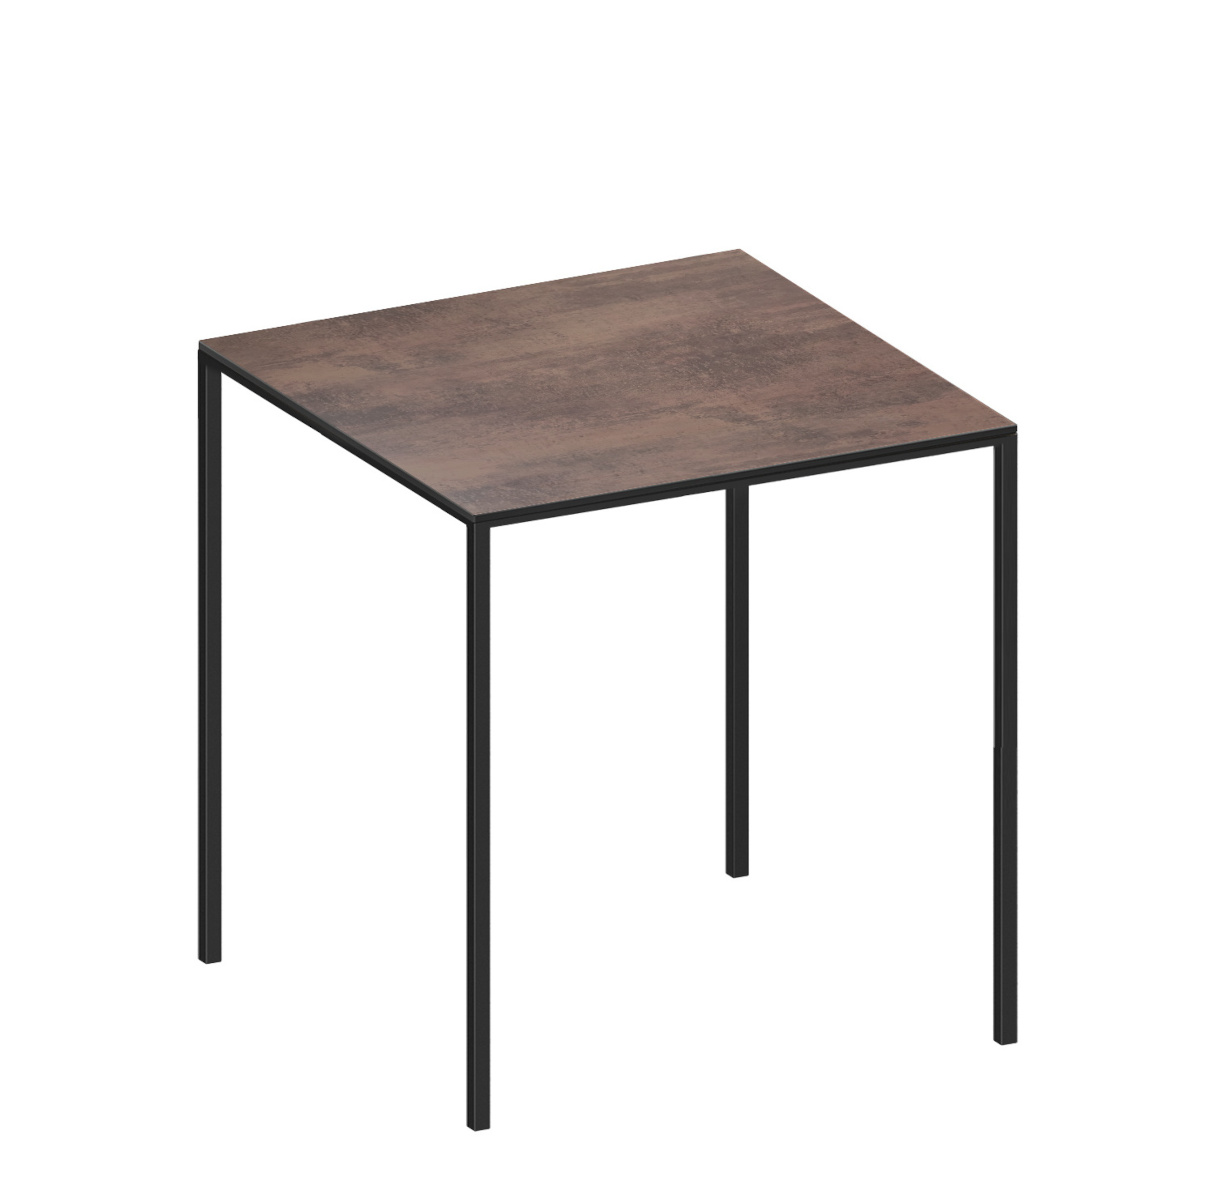 Mini Tavolo Wood Tisch, 69 x 69 cm, schwarz / eiche